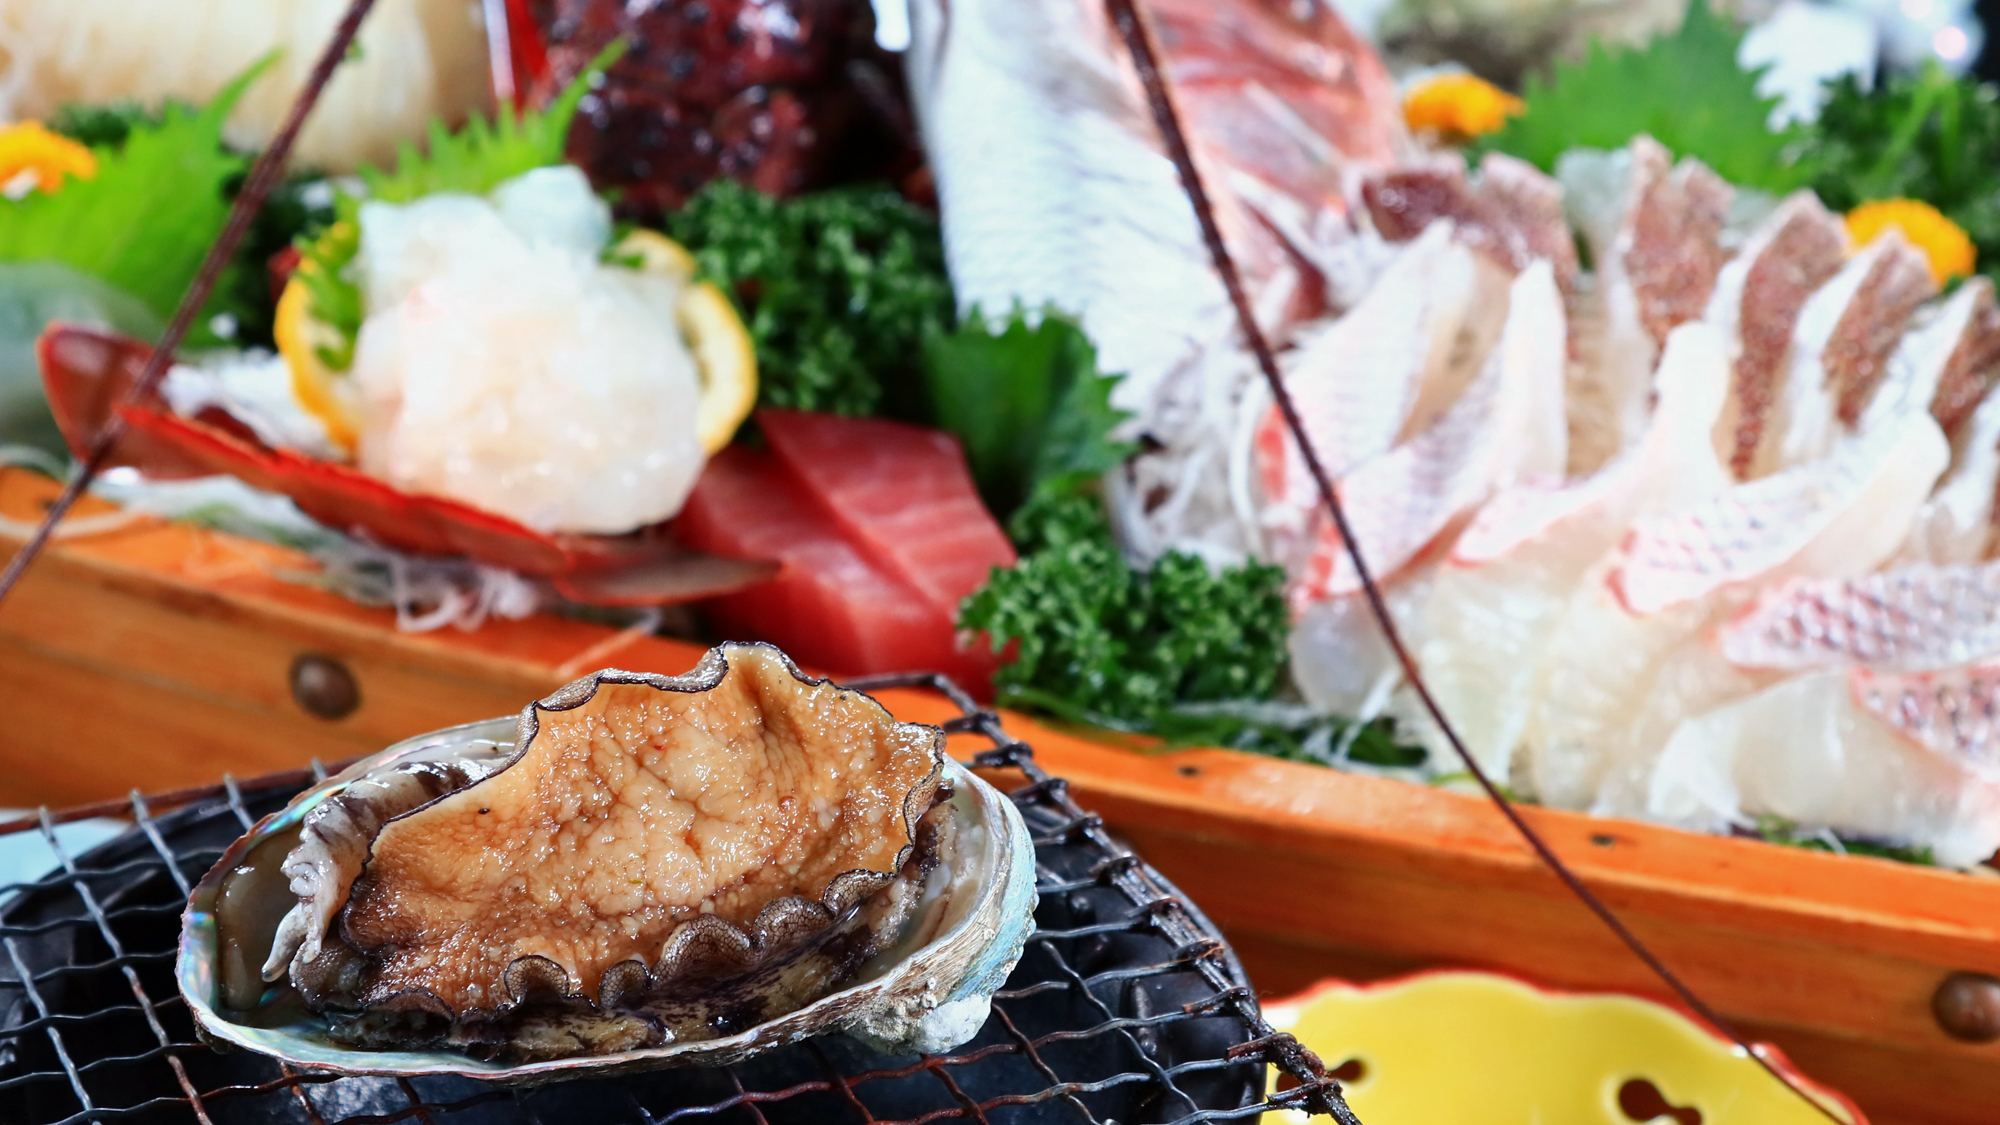 大漁コース一例◆伊勢海老＆アワビの豪華食材！